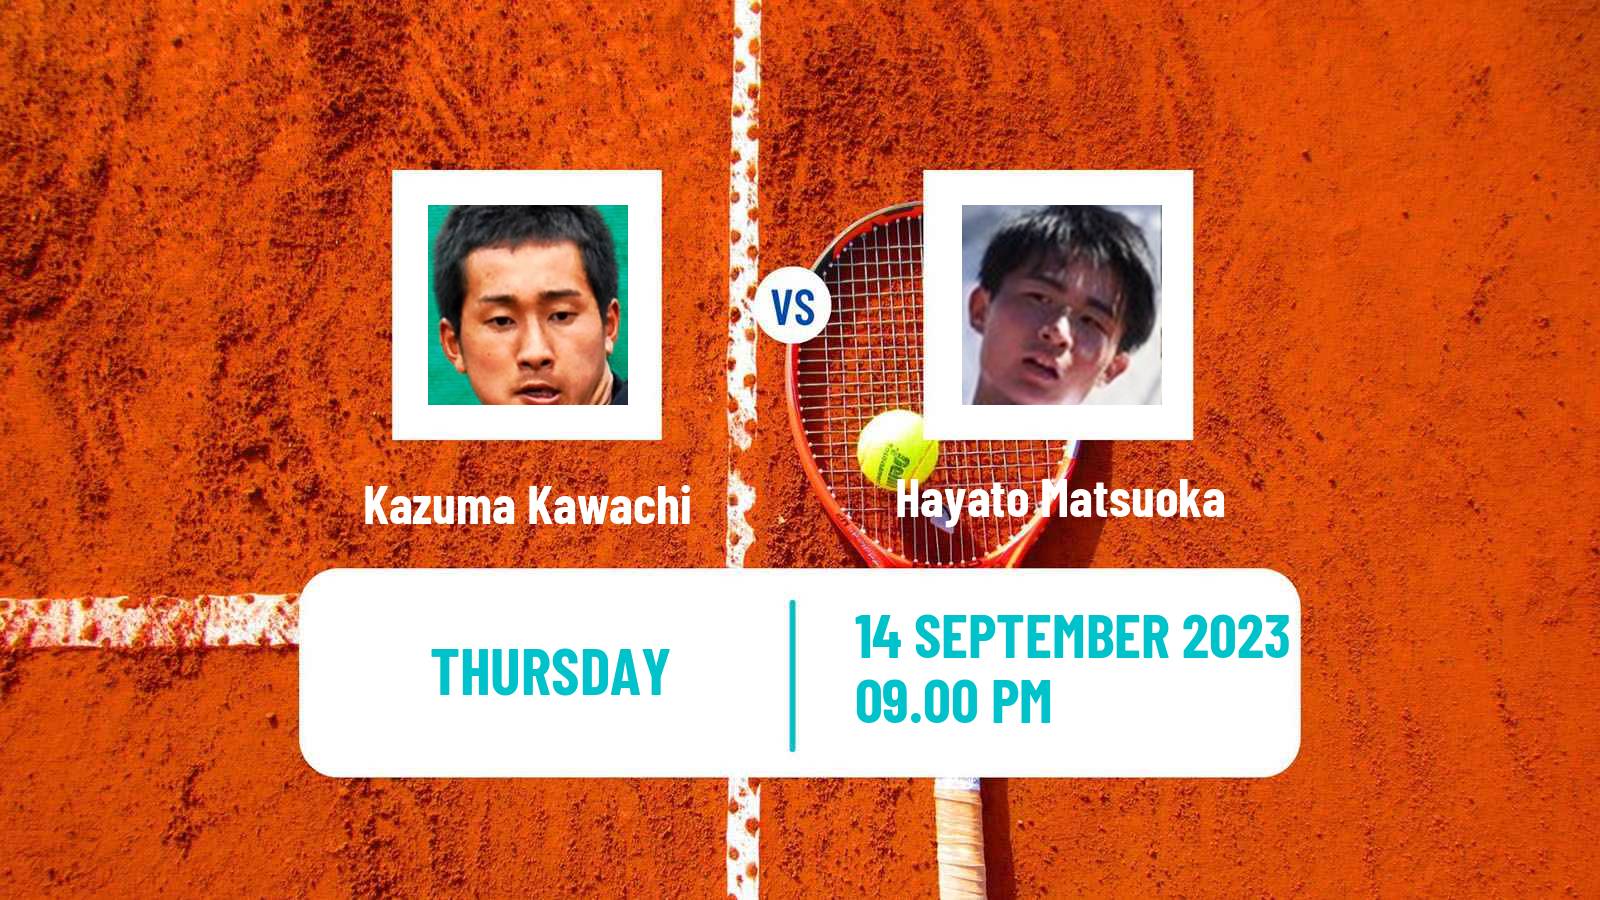 Tennis ITF M25 Sapporo 2 Men Kazuma Kawachi - Hayato Matsuoka